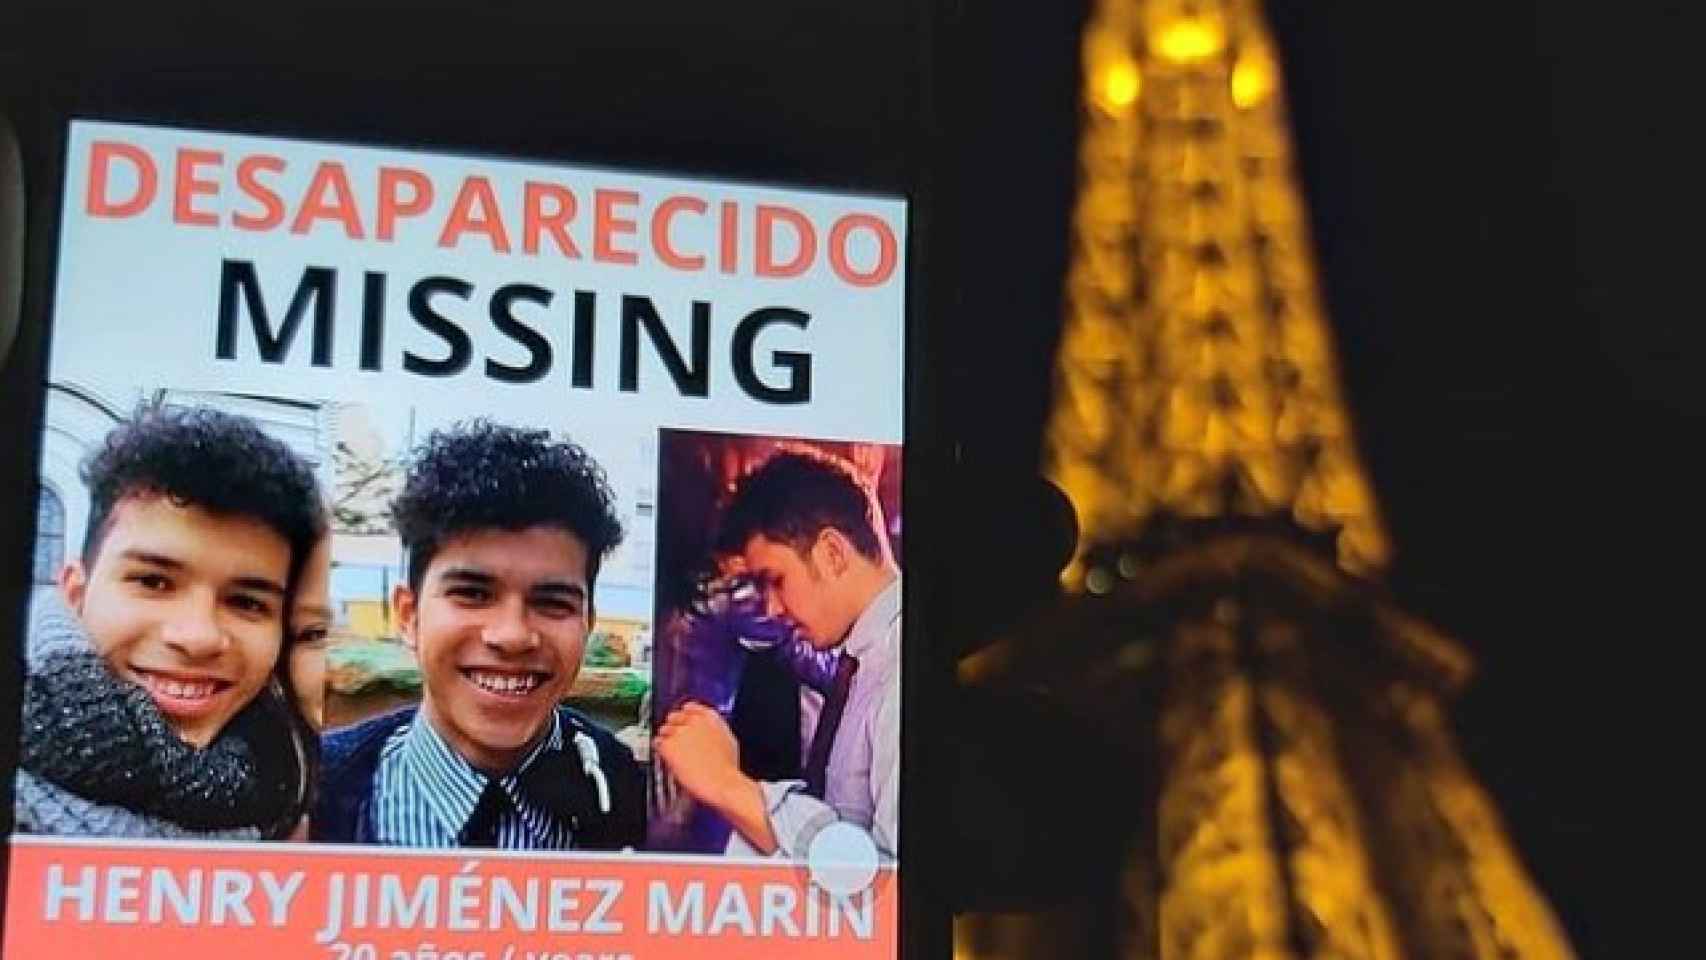 El cartel de su desaparición, en un móvil con el fondo de la Torre Eiffel en París.